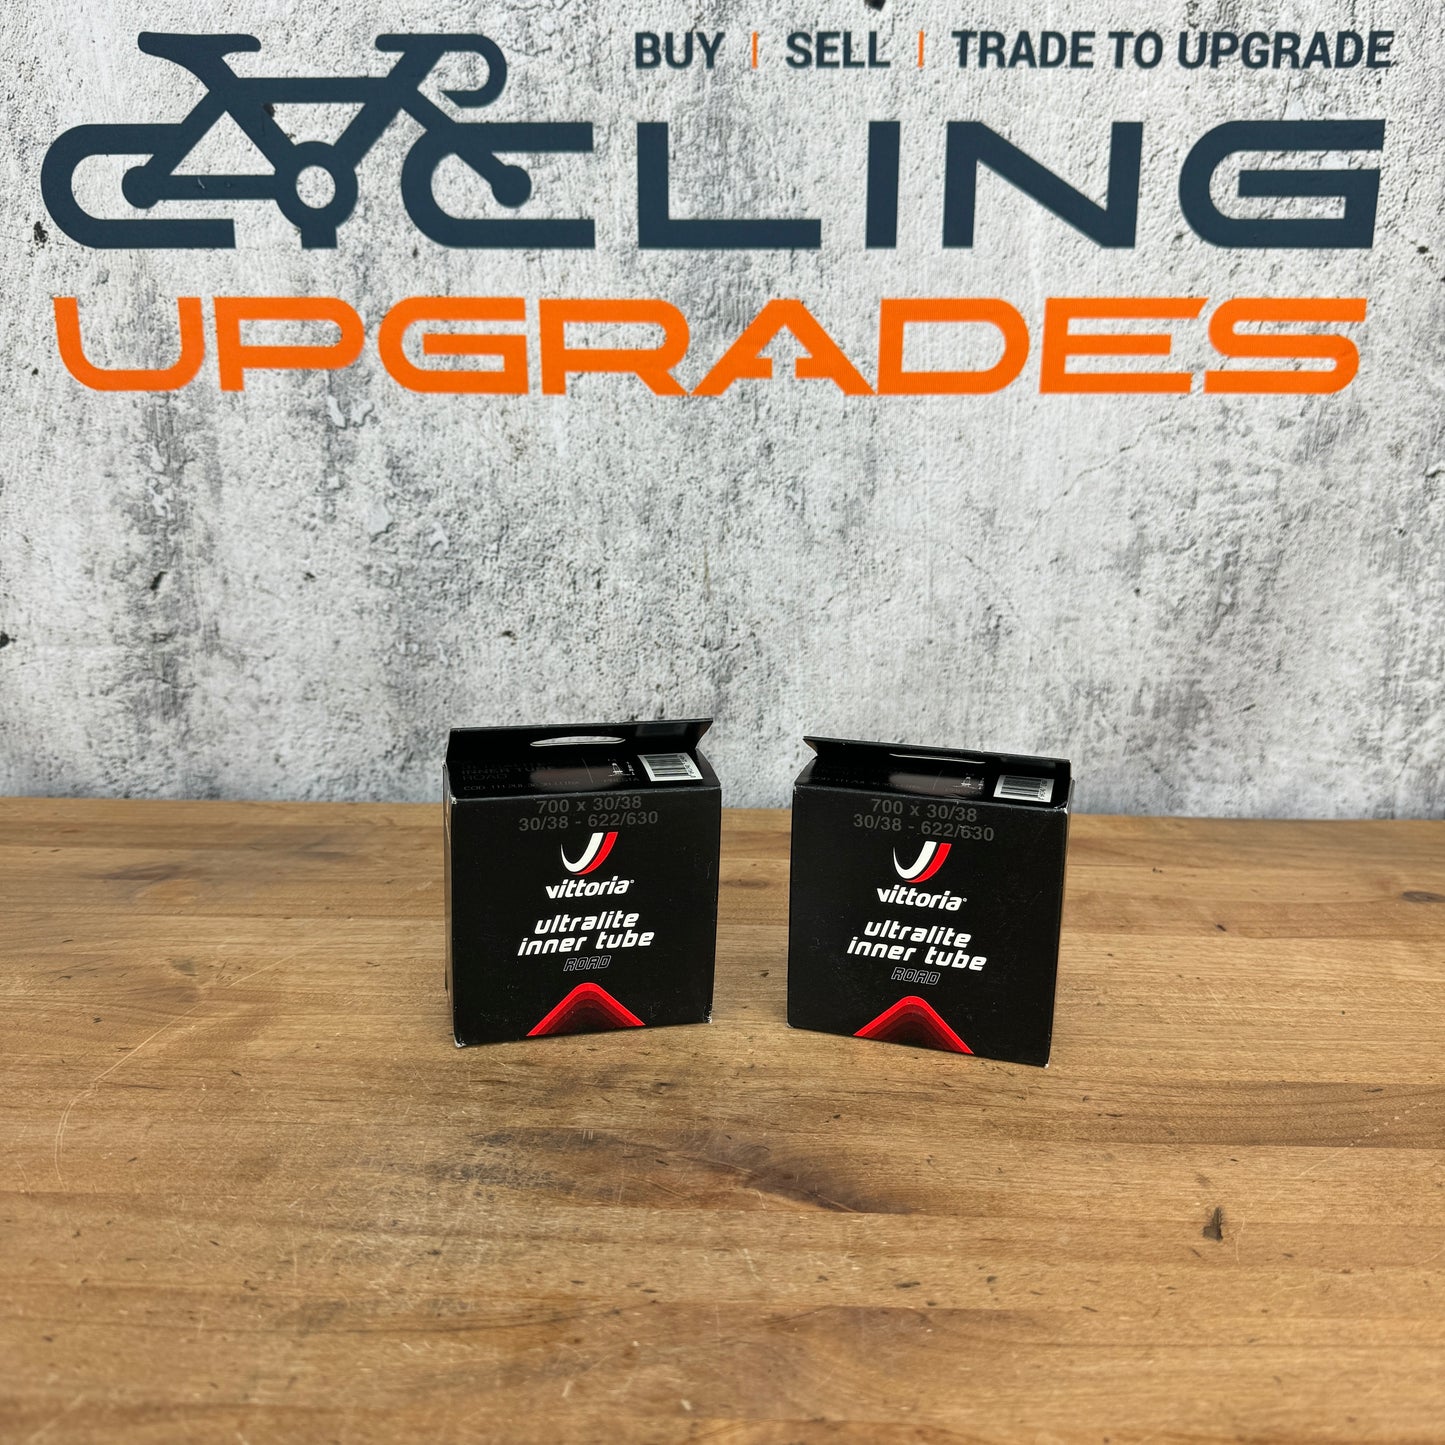 New! Vittoria Ultralite 700c x 30/38c Bike Inner Tubes 36mm Presta Valve Quantity 2